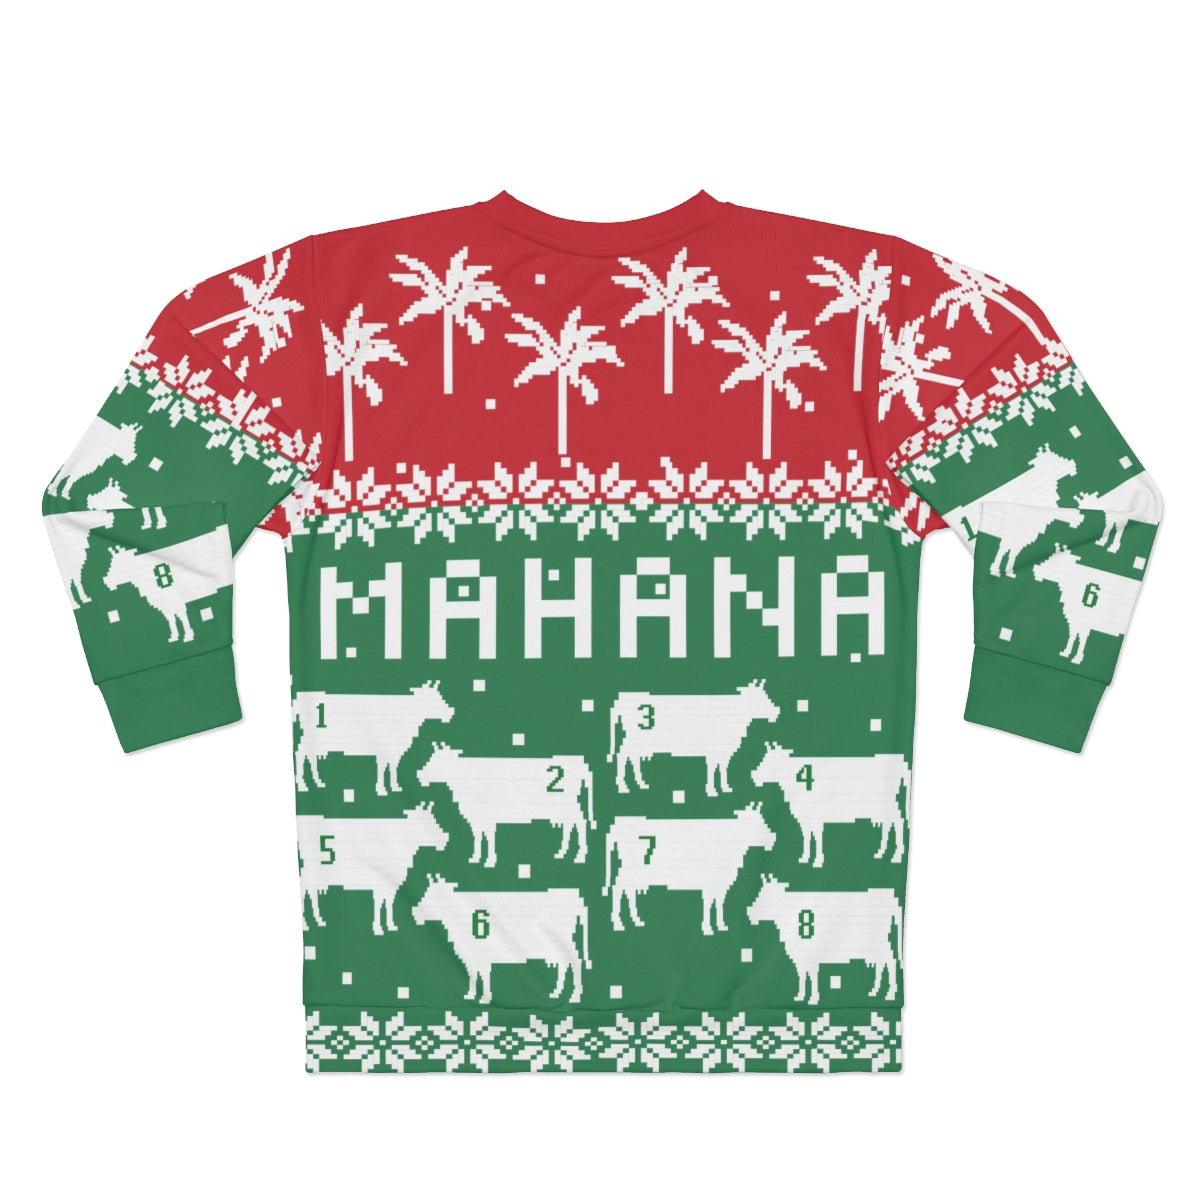 Mahana! You Ugly Sweater - Johnny Lingo's 8 Cow Ugly Christmas Sweatshirt